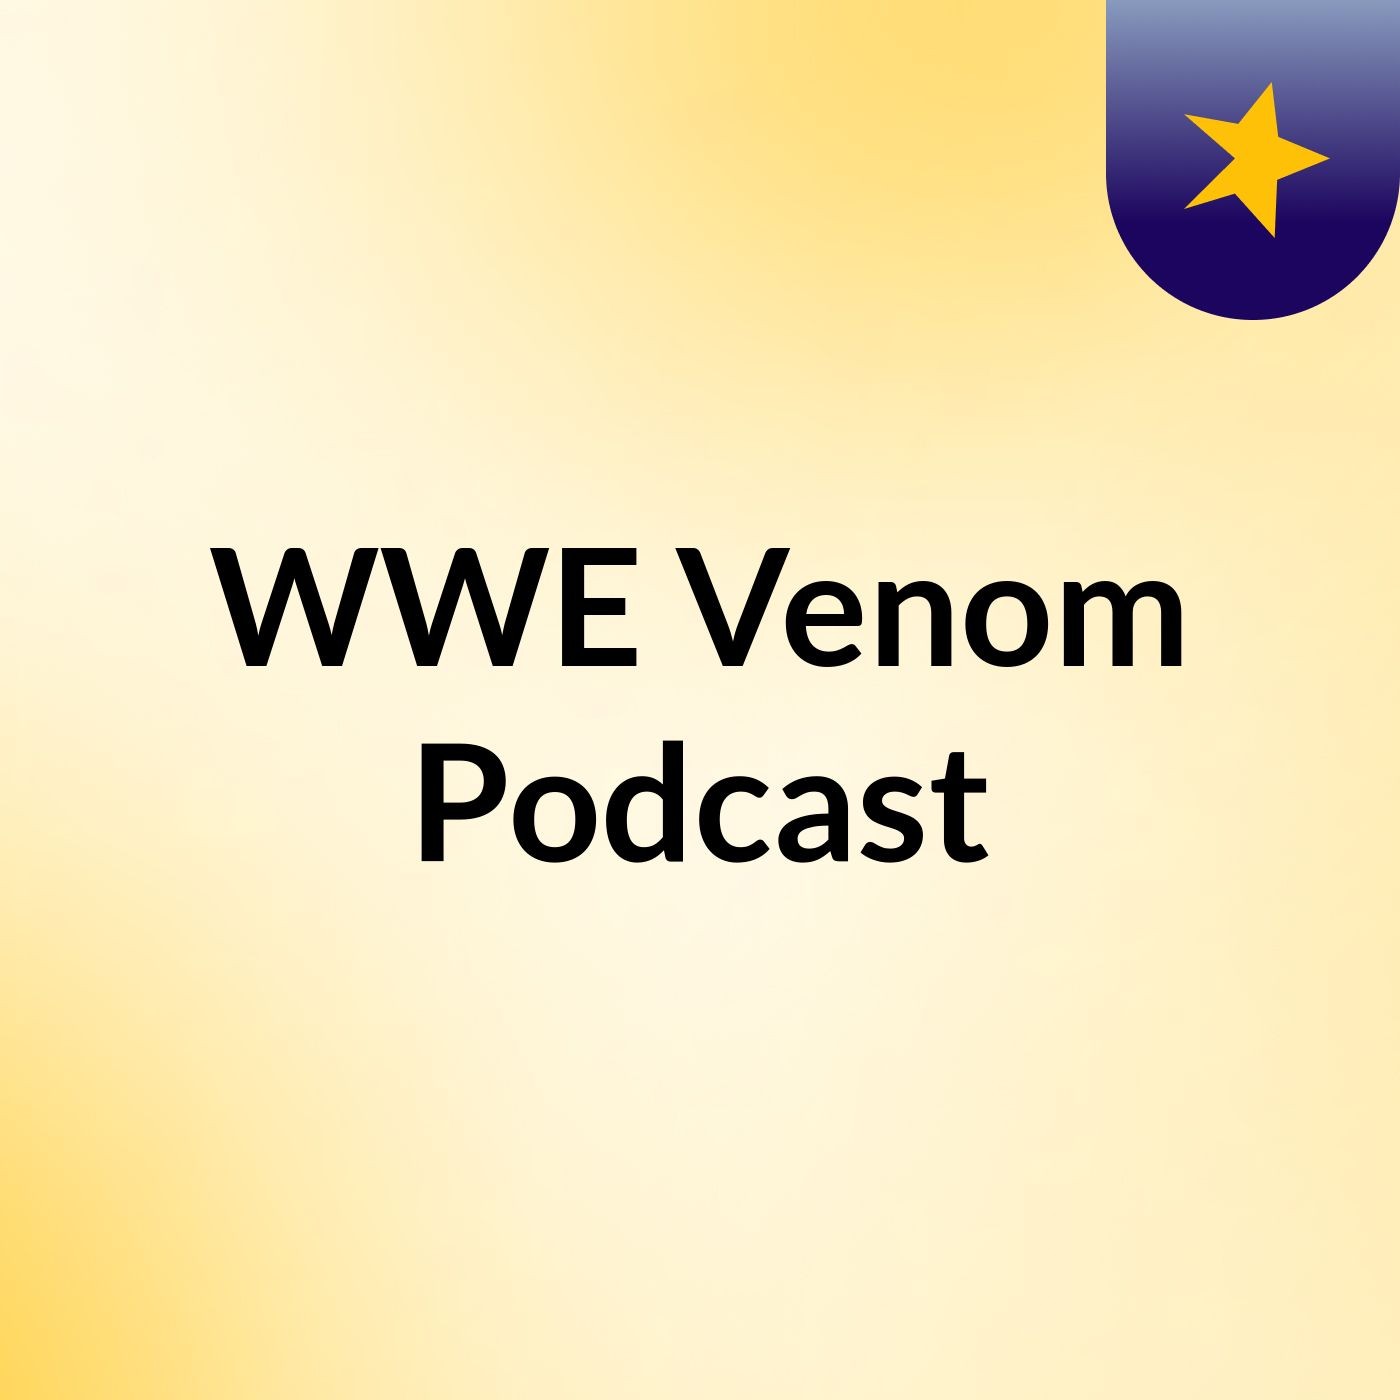 WWE Venom Podcast